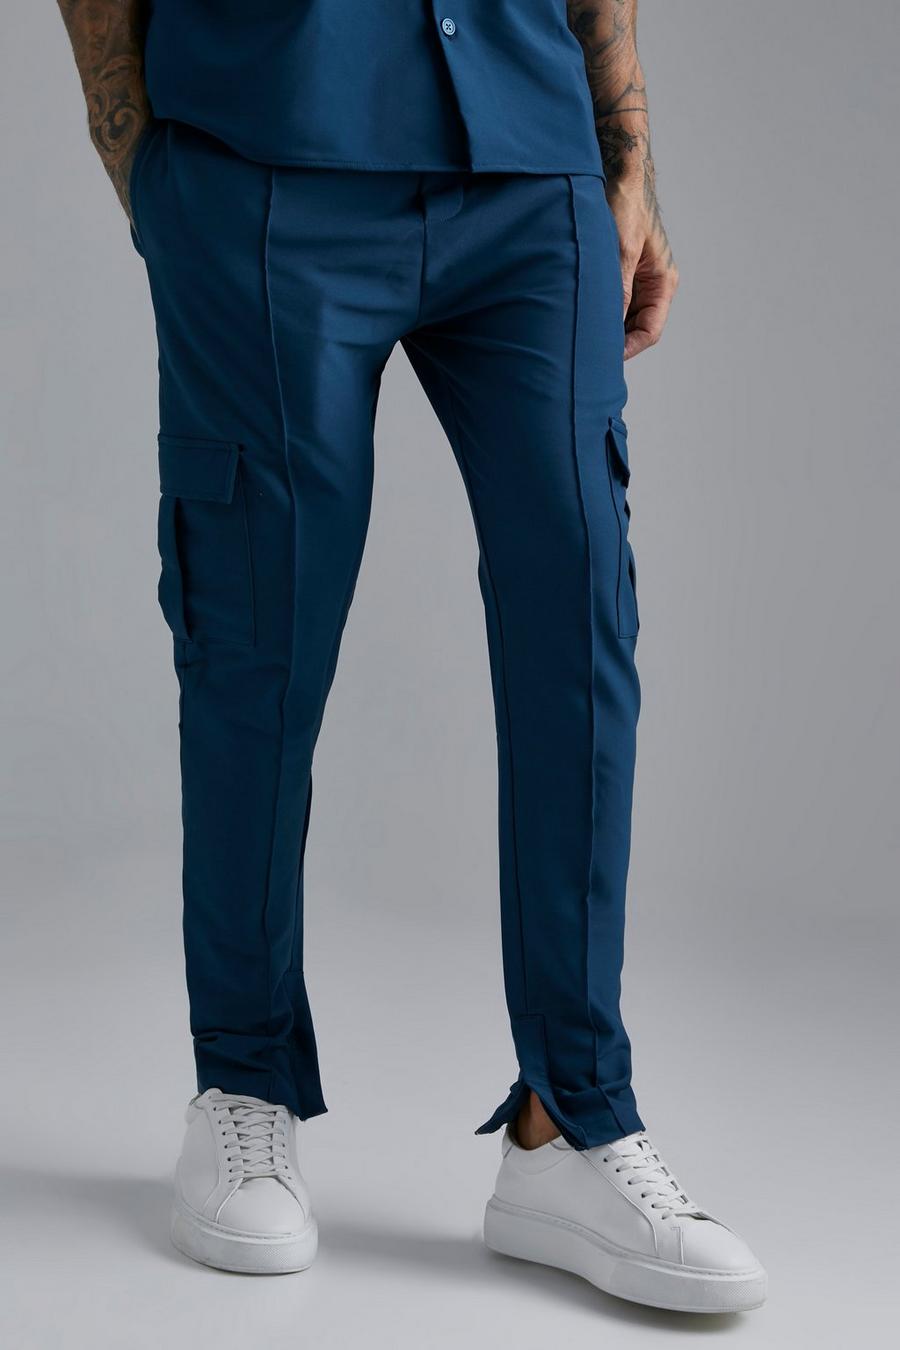 Pantalón ajustado cargo elástico técnico, Navy blu oltremare